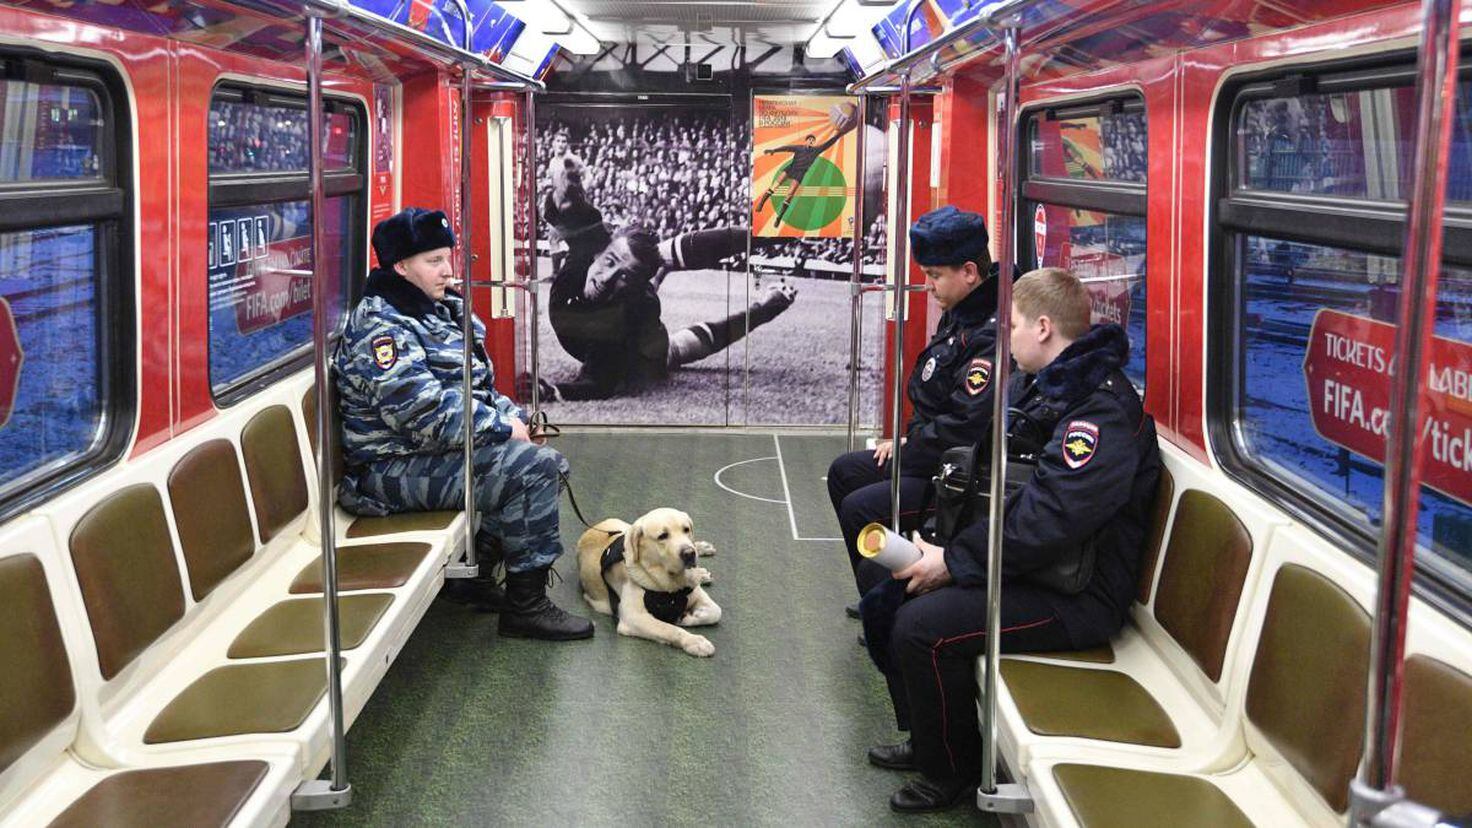 Mundial 2018 | El metro ruso, un búnker para evitar atentados en el Mundial  El metro ruso, un búnker para evitar atentados en el Mundial 